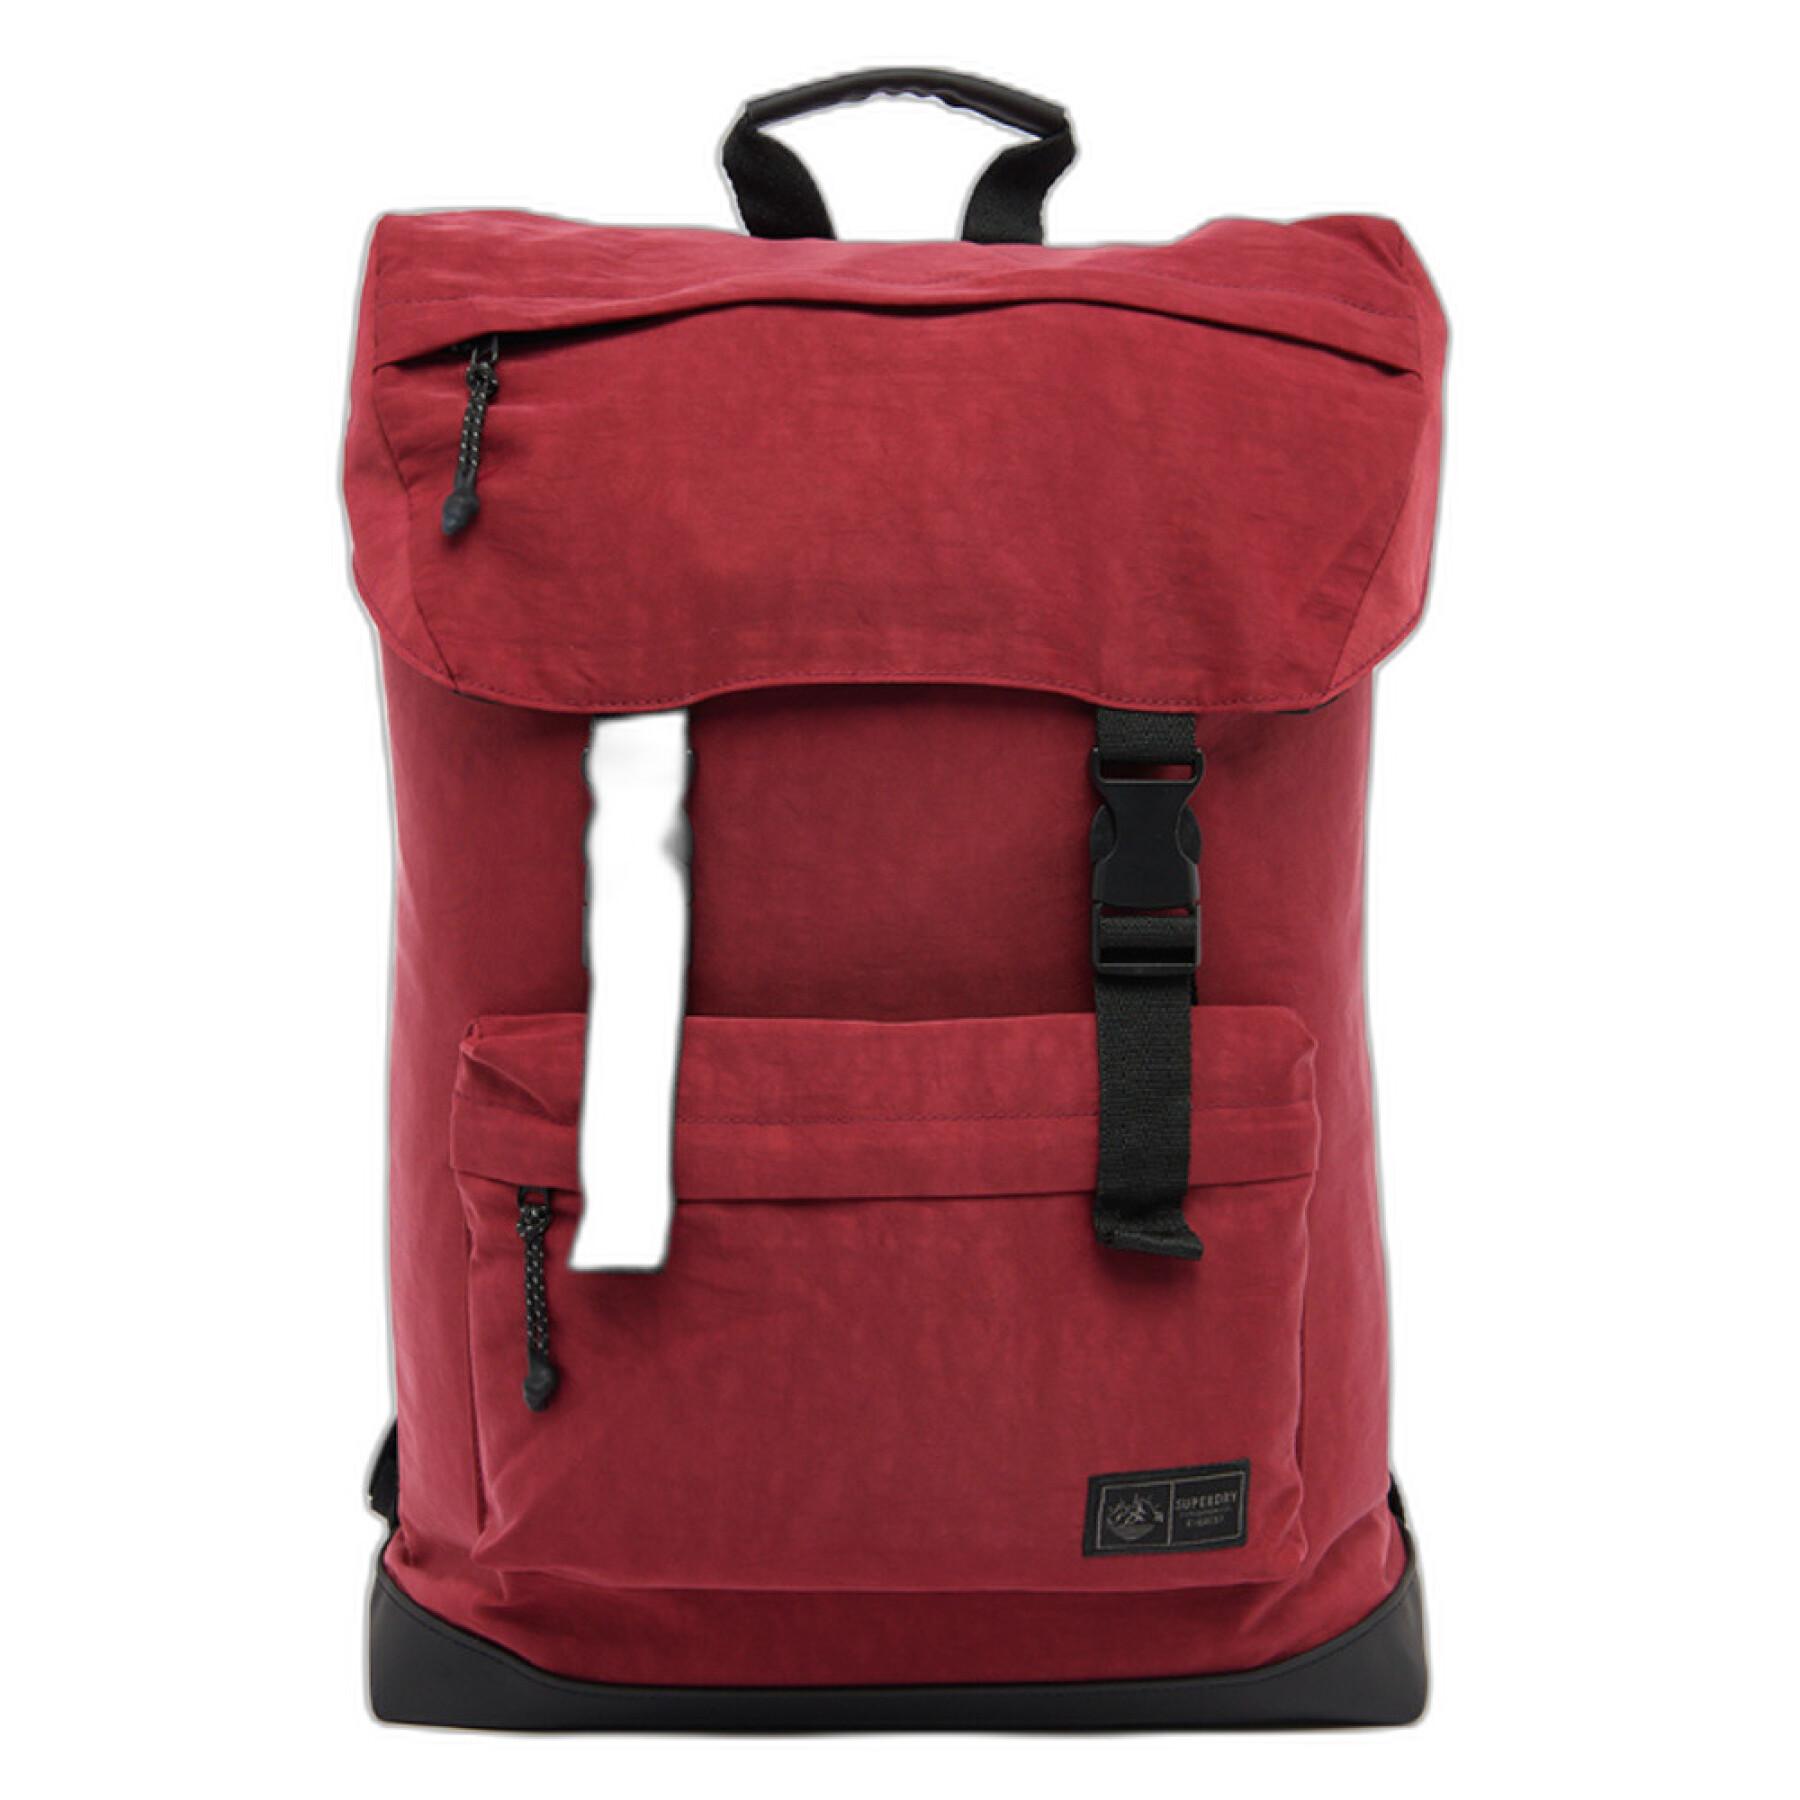 Backpack Superdry Expedition Toploader